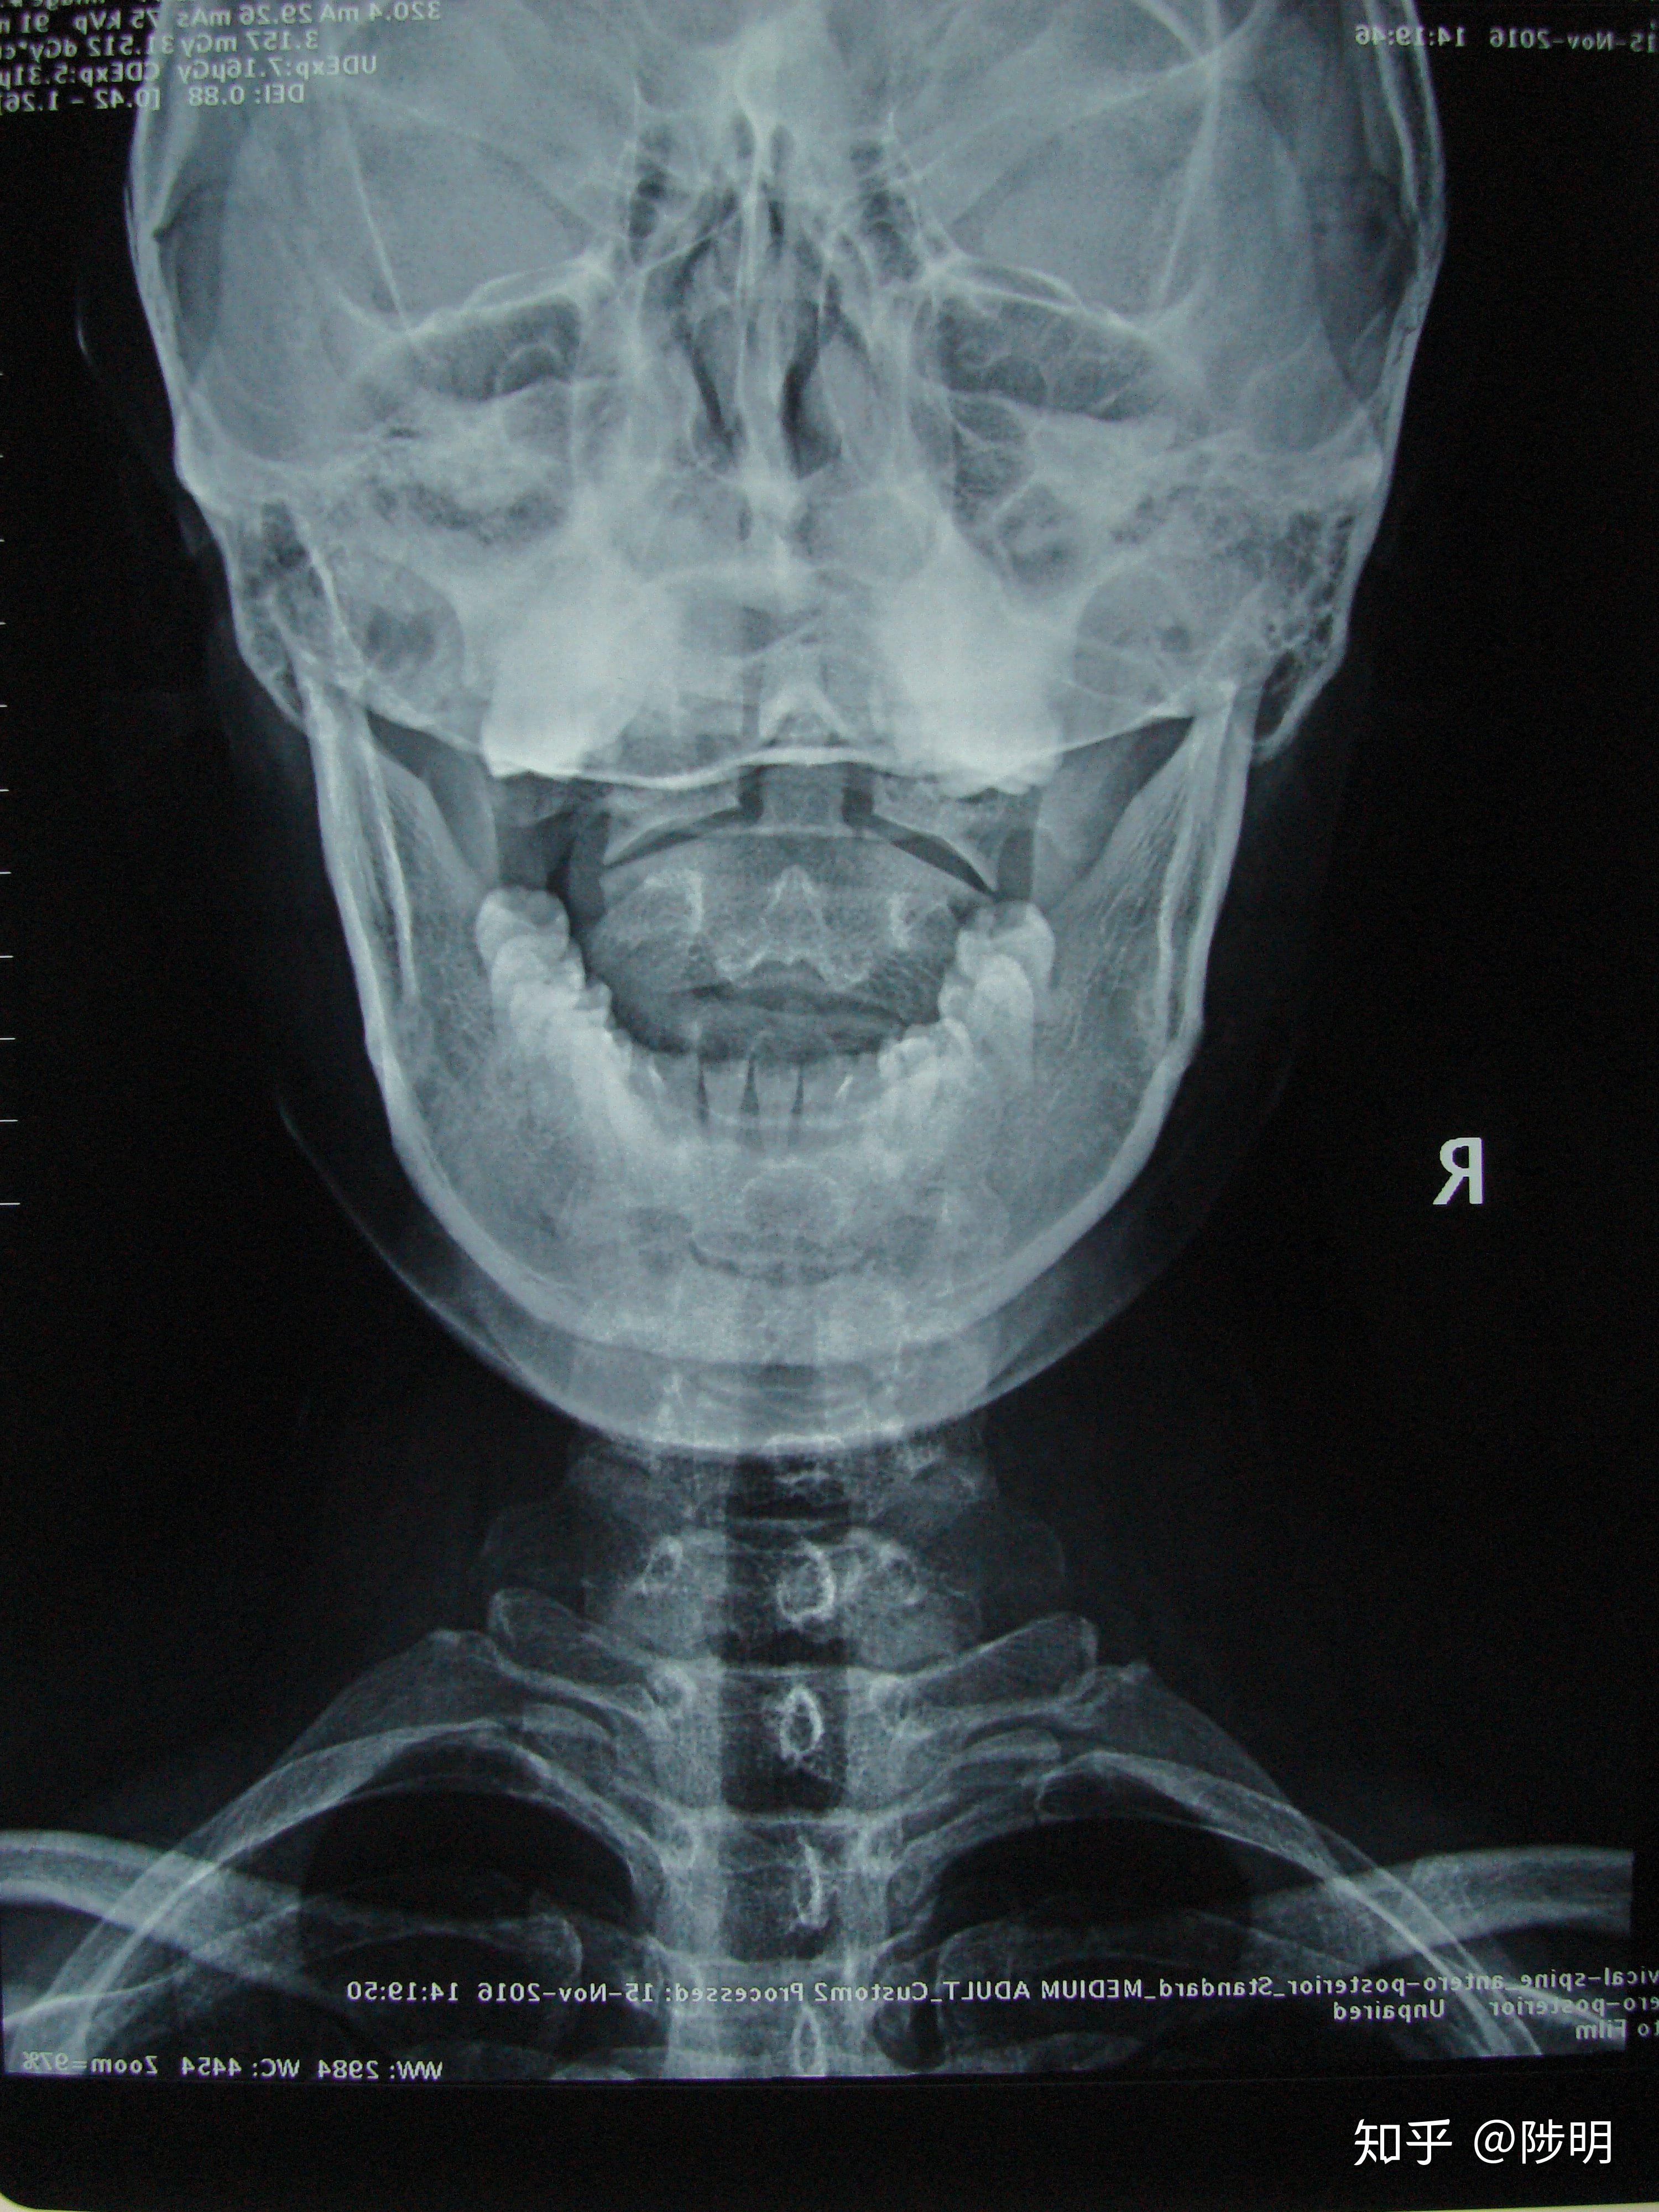 完整颈椎正位,开口看到枕骨大孔和双侧枕骨髁,颞骨乳突,完整的枢椎齿